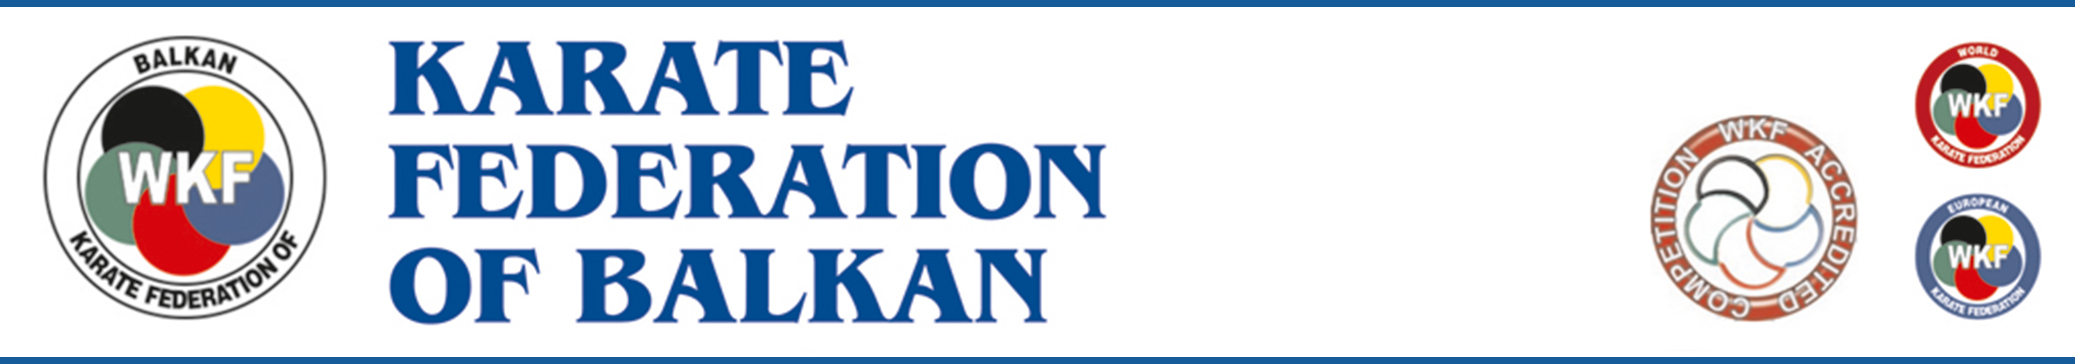 Karate Federation of Balkan